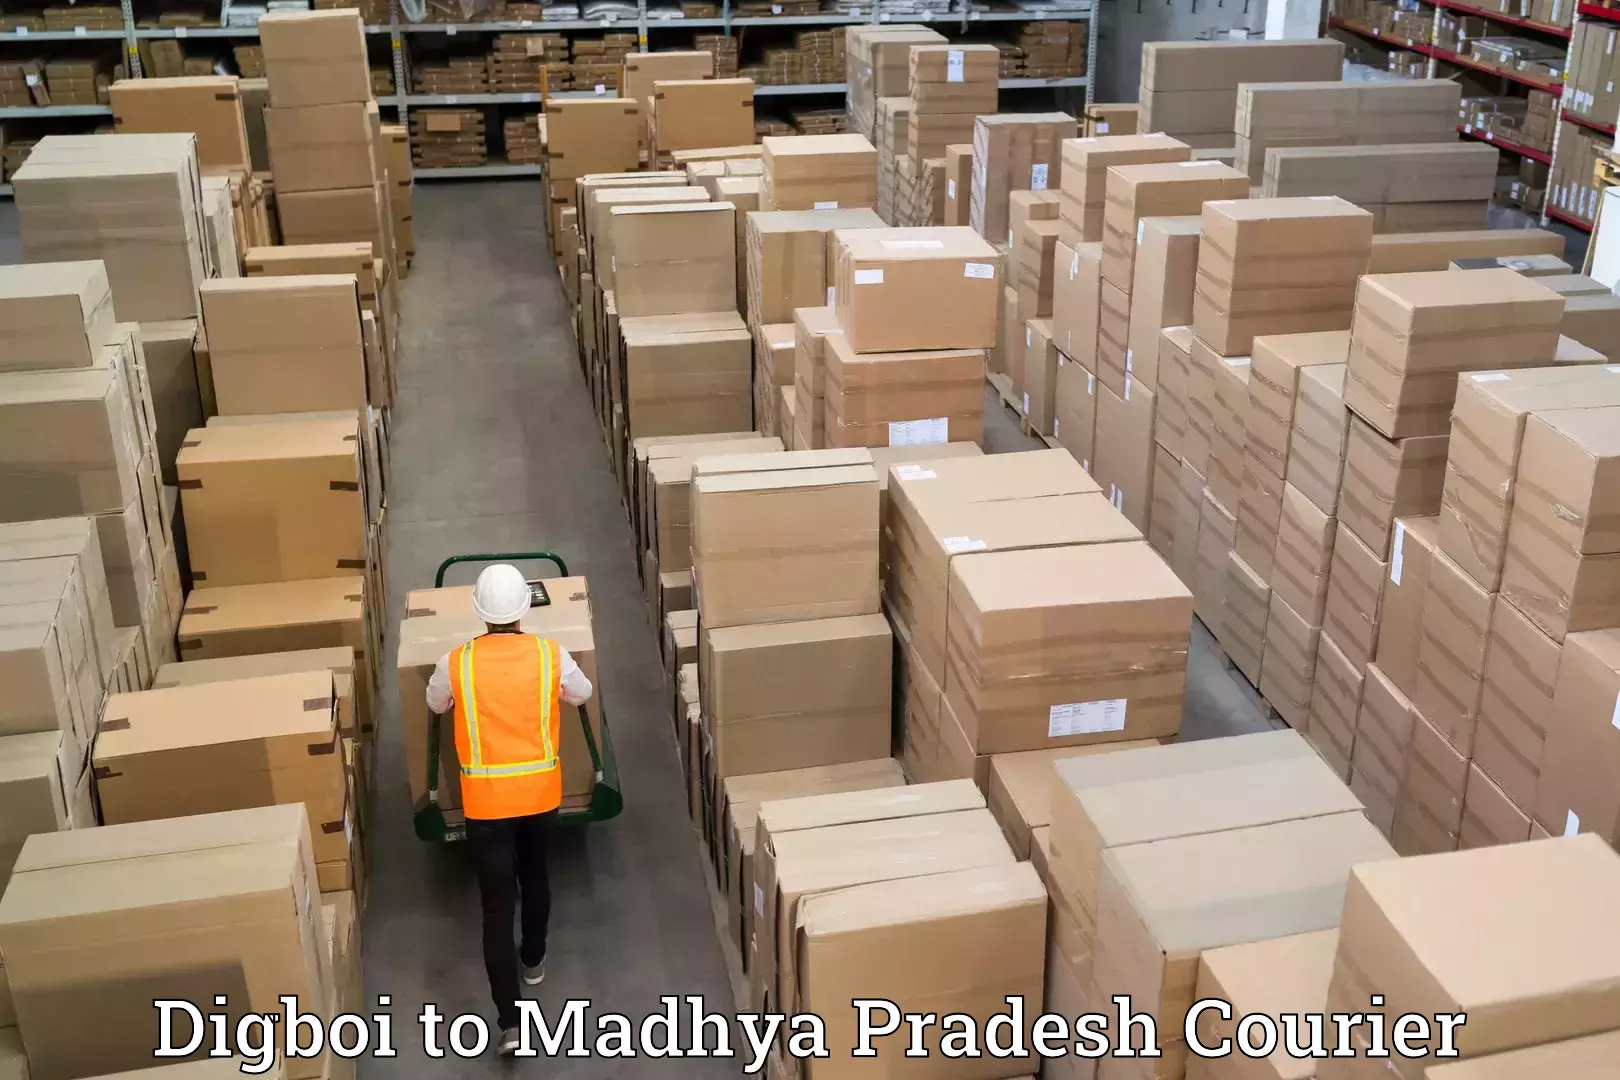 Furniture moving plans Digboi to Madhya Pradesh